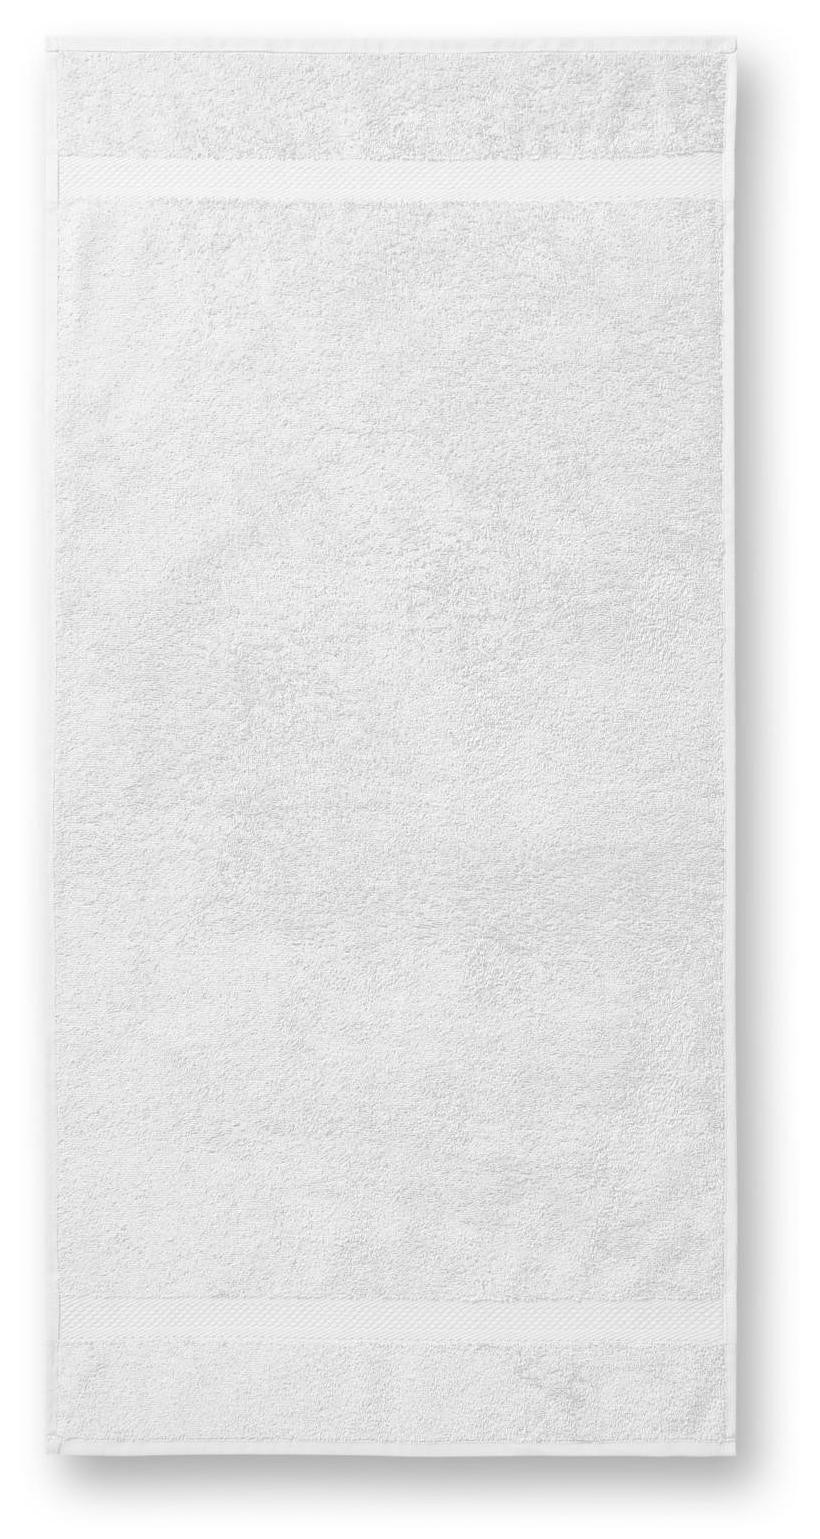 Bavlnený uterák hrubší, biela, 50x100cm